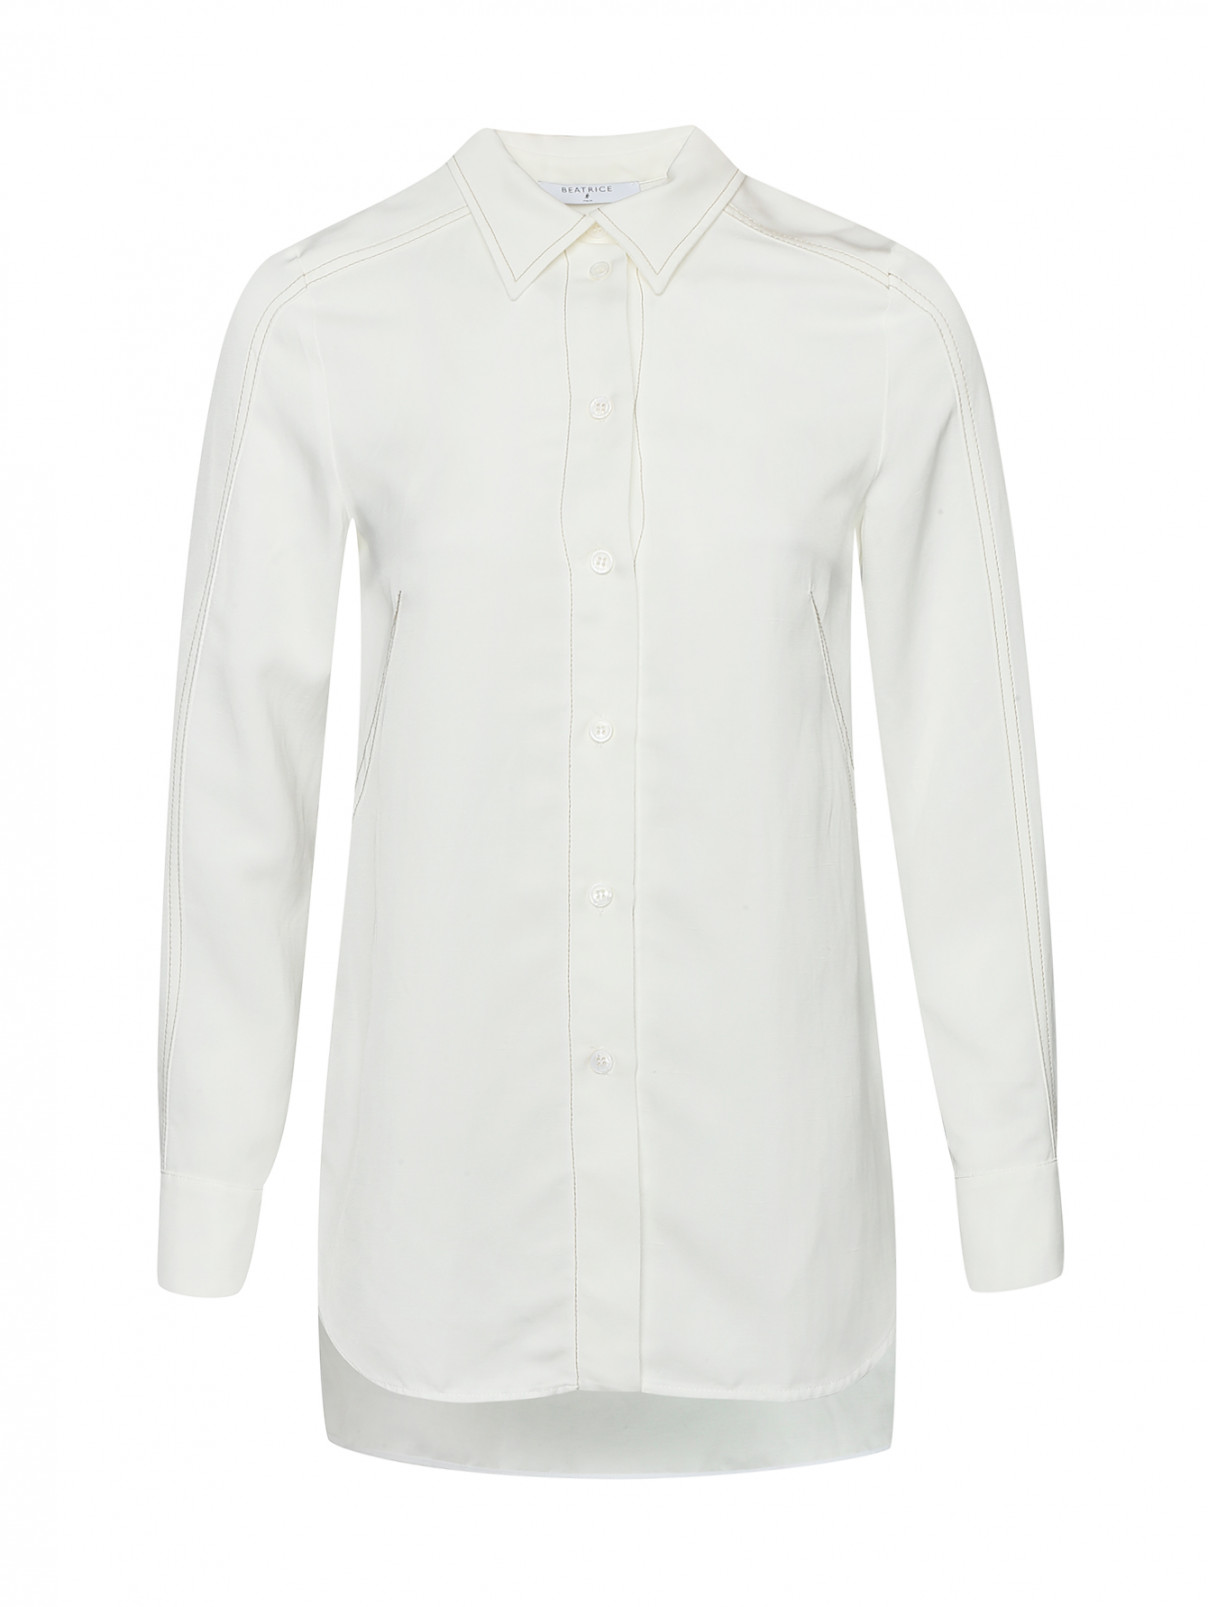 Блуза с добавлением льна Beatrice .b  –  Общий вид  – Цвет:  Белый